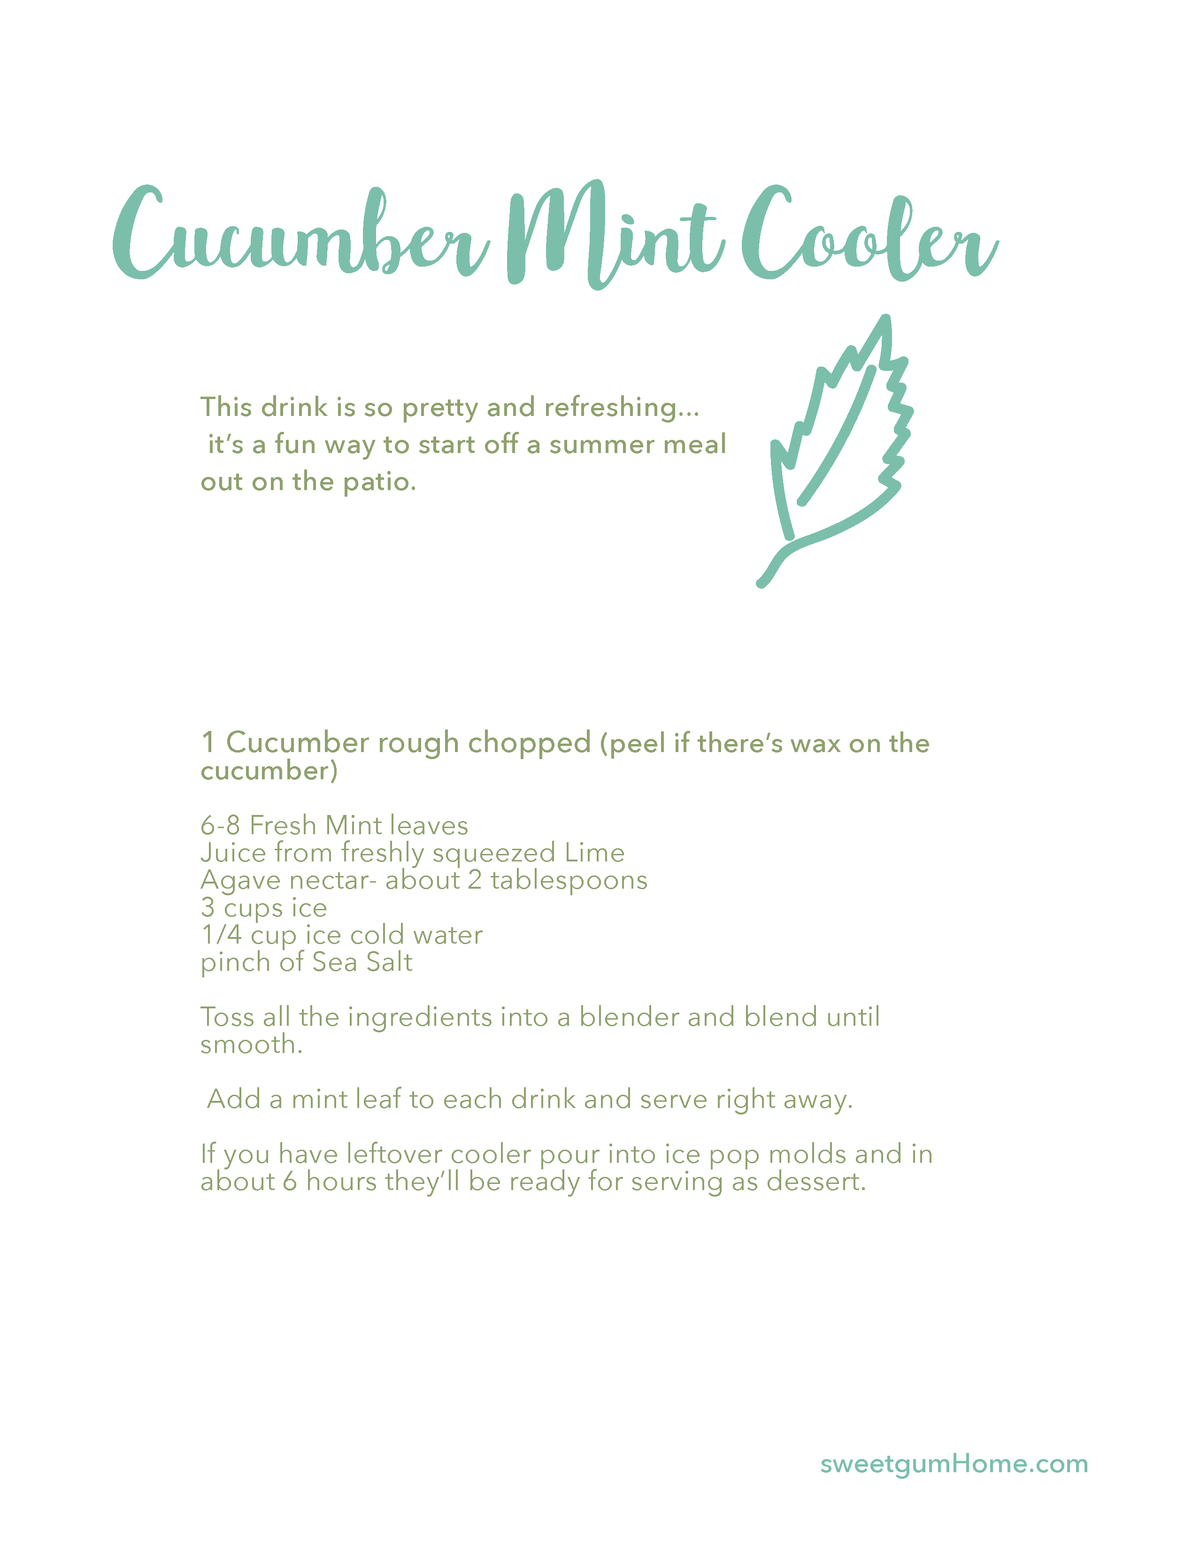 Cucumber Cooler